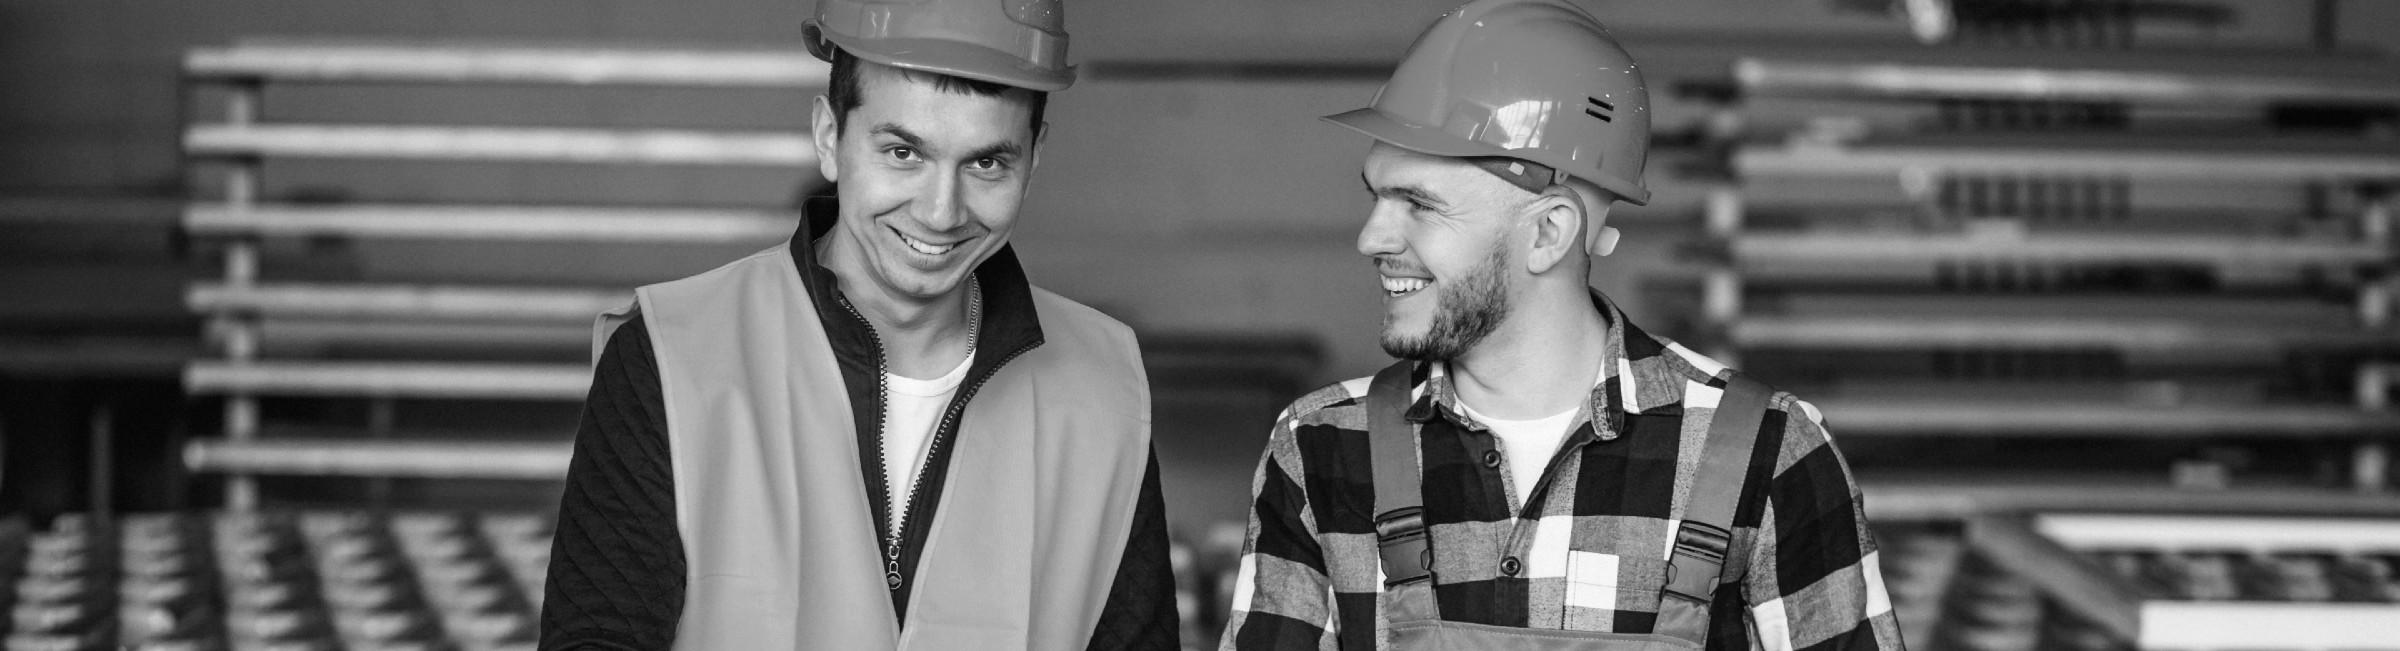 Deux collègues sourient dans une usine de production